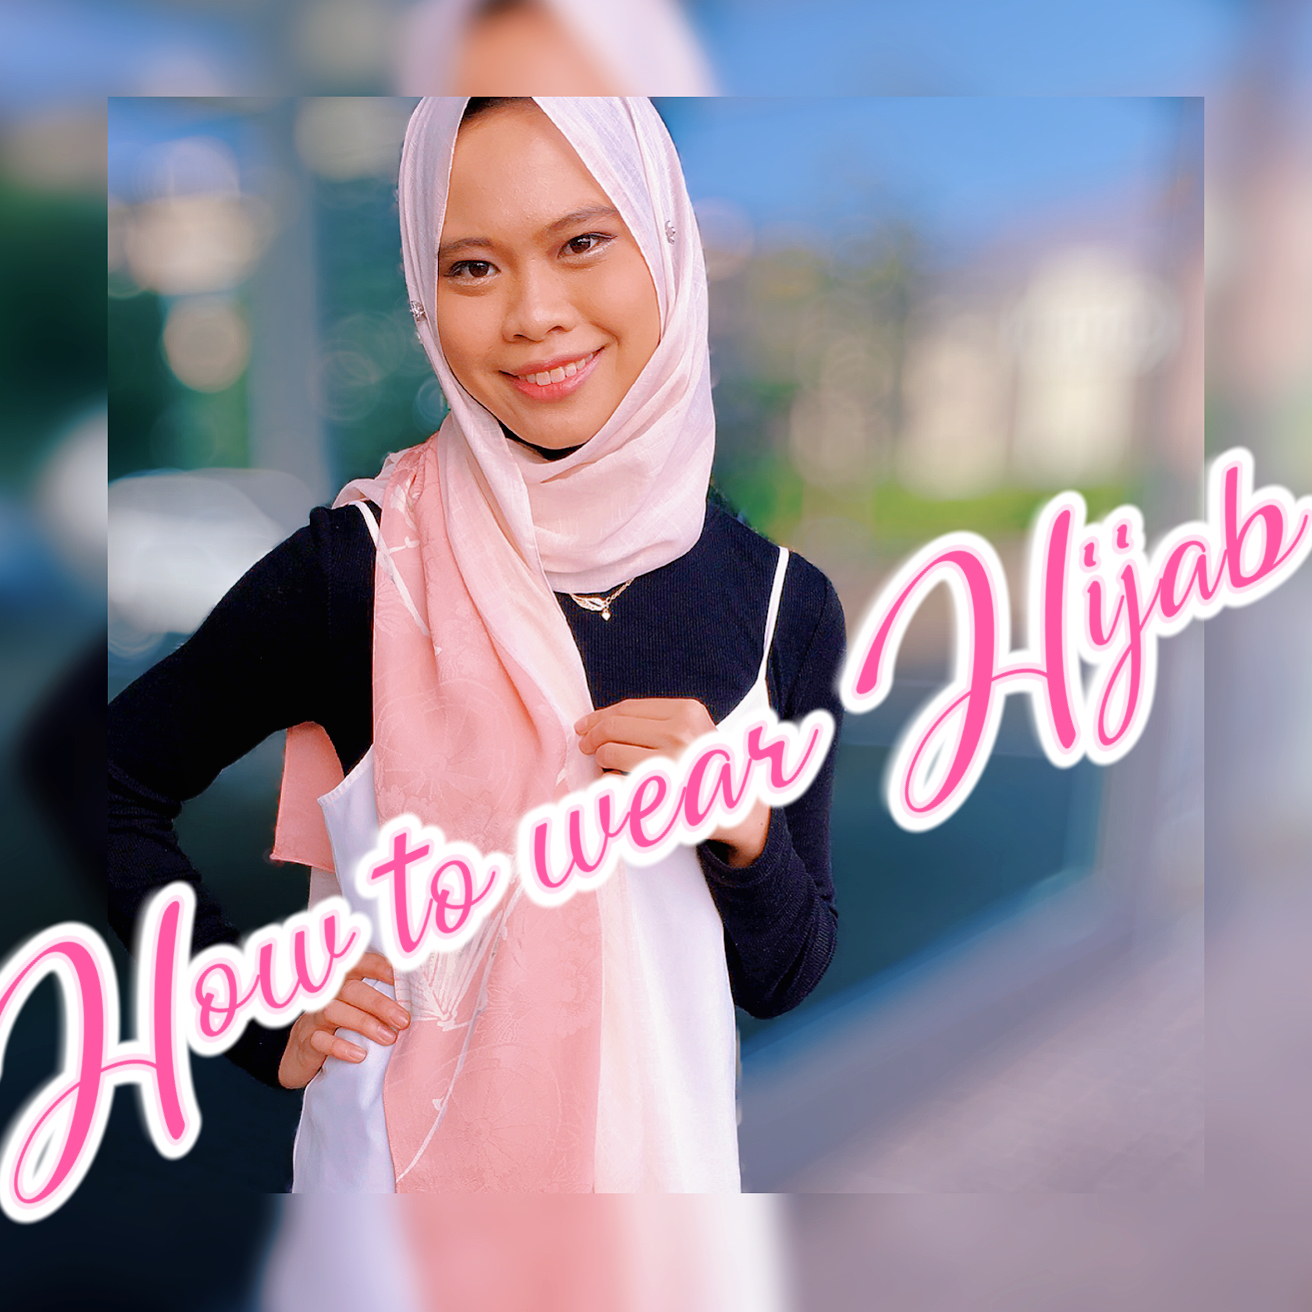 輝い ロングヒジャブ<br>New Ayami Hijab Instant ヒジャブ イスラム教 宗教 民族衣装 女性用 レディース 正装 ムスリム  シンプル ロング ベール ヴェール 羽衣 羽織 羽織り はおり はおりもの スカーフ おしゃれ 薄手 女性 学校 職場 オフィス 薄い かわいい 可愛い